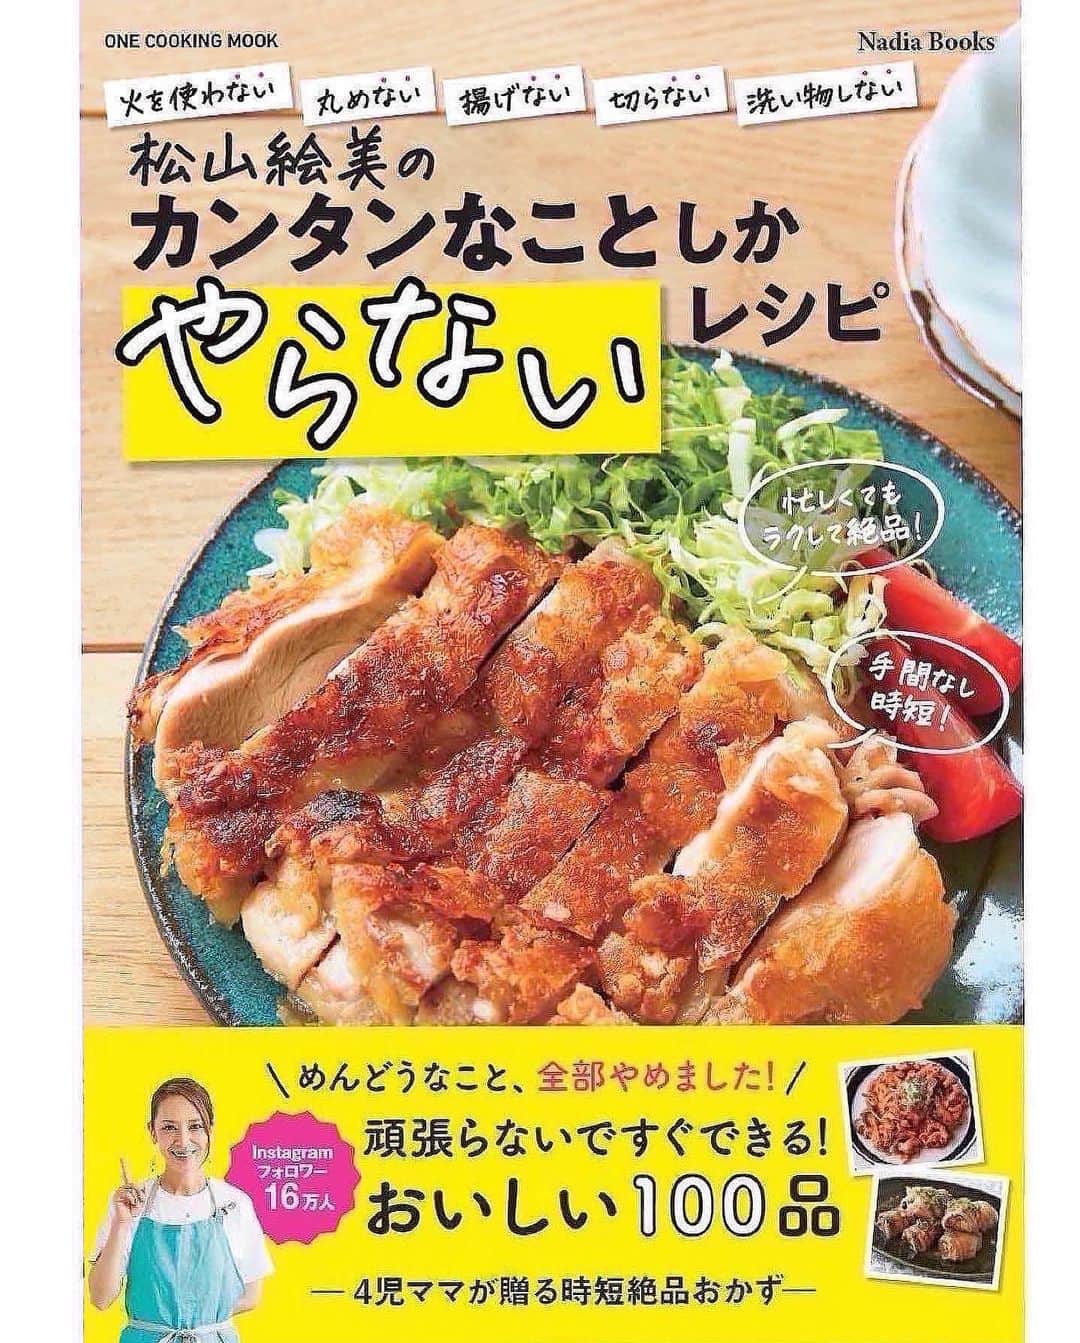 松山絵美さんのインスタグラム写真 - (松山絵美Instagram)「#レシピ有り　⁣ ※４人分・２人分の材料、作り方、薬膳効果は写真スワイプしてもご覧いただけます🙆🏻‍♀️⁣ ⁣ ⁣ 《プルナック(牛肉とたこ炒め)【夏の疲れに♪】》⁣ ⁣ ⁣ ⁣ 牛肉とたこを炒める韓国料理です✨⁣ 本来は生の手長たこを使いますが日本のスーパーで手に入る茹でたこで作りました🐙✨⁣ タウリンたっぷりなタコの旨味と牛肉の旨味がギュッと詰まって疲れも吹き飛びます👍✨⁣ ⁣ ⁣ 薬膳効果⁣ ☆牛肉...骨や筋肉の強化、食欲不振、虚弱体質、無気力に⁣ ⁣ ☆タコ...高血圧に、血栓予防に、足腰の老化に。⁣ ⁣ ☆たまねぎ…滋養強壮に、血の滞りを解消、新陳代謝を促進、疲労回復に、生活習慣病予防に⁣ ⁣ ☆しめじ...肌荒れに、便秘に、貧血に、高血圧に⁣ ⁣ ☆にんにく...腫れものの改善に、風邪予防に、解毒に、疲労回復に、脳の活性に、動脈硬化予防に、血糖値の改善に⁣ ⁣ ⁣ ⁣ （調理時間：15分)⁣ -------------------⁣ 【材料4人分】(２人分の分量は写真４枚目をご覧ください)⁣ -------------------⁣ 牛こま切れ肉:240g⁣ ⁣ 茹でだこ:240g⁣ ⁣ 玉ねぎ:1/2個・正味120g⁣ ⁣ しめじ:小1パック・正味100g⁣ ⁣ 韓国春雨:60～80g⁣ ⁣ (A)醬油:大さじ2⁣ (A)砂糖:小さじ4⁣ (A)にんにくすりおろし・コチュジャン:各大さじ1⁣ (A)鶏がらスープの素:小さじ1⁣ ⁣ 醬油:小さじ2～3⁣ ⁣ ごま油:大さじ1⁣ ⁣ 青ネギの小口切り・白いりごま:お好みで⁣ -------------------⁣ -------------------⁣ 【下準備】牛こま切れ肉は【A】を揉み込む。⁣ ⁣ 玉ねぎは繊維に沿って5㎜位に切る。⁣ ⁣ しめじは小房に分ける。⁣ ⁣ 茹でだこは食べやすく切る。⁣ ⁣ 韓国春雨は袋の表示より1分短く茹でて水気を切る。⁣ ⁣ ⁣ ⁣ 【1】フライパンにごま油を熱し、玉ねぎを炒める。⁣ ⁣ ⁣ ⁣ 【2】少し透き通って来たら、牛肉、たこ、しめじも加えて炒める。⁣ ⁣ ⁣ ⁣ 【3】全体に火が通ったら韓国春雨と醬油を加えて炒め合わせ出来上がり！⁣ 器に盛り、お好みで青ネギの小口切り・白いりごまを乗せる。⁣ ⁣ ⁣ ⁣ ⁣ ⁣ ⁣ Nadiaレシピ🆔 465248⁣ レシピサイトNadiaの検索バーにレシピ🆔番号を入力してみてください⁣ https://oceans-nadia.com/⁣ ⁣ ⁣ ⁣ ⁣ ✩✩✩✩✩✩《お知らせ》✩✩✩✩✩✩⁣ 『4児ママ・松山さんの薬膳効果つき やみつき節約めし』重版が決定しました🥹✨✨⁣ ⁡⁣ ⁡⁣ 本書では1食1人分のおかずが100円台に収まるレシピをご紹介しています✨⁣ また「やる気のないときほど開きたい料理本」をめざして、簡単な調理法にもこだわりました。長くレパートリーに加えていただけるメニューが見つかれば、うれしいです🥹⁣ ⁡⁣ Amazon⁣ https://www.amazon.co.jp/dp/4391155567/⁣ ⁡⁣ 楽天ブックス⁣ https://books.rakuten.co.jp/rb/16605719/⁣ ⁡⁣ ⁡⁣ ⁡⁣ ⁡⁣ 《松山絵美のカンタンなことしかやらないレシピ》⁣ 増刷致しました🙇‍♀️✨⁣ ⁡⁣ ⁡⁣ 【手間は省いて愛情込める】をモットーに、⁣ めんどうなことを「やらない」レシピたち。 ラクして作れるのに見映えもよくて、家族もパクパク食べてくれる！⁣ そんなレシピを100品と、調味料のご紹介や、お気に入りキッチンまわりアイテムのご紹介。私の1day ルーティーン。⁣ 薬膳アドバイスなど、コラムページもたくさんです🙌✨　　⁣ ⁡⁣ ヒルナンデスでもご紹介されました✨⁣ ⁡⁣ ⁡⁣ 《松山絵美のカンタンなことしかやらないレシピ》⁣ ⁡⁣ Amazon⁣ https://www.amazon.co.jp/dp/4651201350/⁣ 楽天ブックス⁣ https://books.rakuten.co.jp/rb/16974637/?l-id=search-c-item-text-03⁣ ⁡⁣ またストーリーズ、ハイライト【新刊やらないレシピ】からどうぞ🙇‍♀️⁣ ⁡⁣ ⁡⁣ ⁡⁣ ⁡⁣ ＊＊＊＊＊＊＊＊＊＊＊＊＊＊＊＊＊＊＊＊＊＊＊⁣ ⁡⁣ #ネクストフーディスト　	⁣ #Nadia⁣ #NadiaArtist⁣ #Nadiaレシピ⁣ #フーディーテーブル⁣ #レシピ⁣ #やみつきレシピ⁣ #簡単レシピ⁣ #節約レシピ⁣ #時短レシピ⁣ #今日もハナマルごはん⁣ #おうちごはんlover⁣ #おうちごはん革命⁣ #やみつき節約めし	⁣ #松山絵美のカンタンなことしかやらないレシピ⁣ #やらないレシピ⁣ #recipe⁣ #cooking⁣ #japanesefood⁣ #Koreanfood⁣ #レシピあり⁣ #レシピ付き⁣ #料理好きな人と繋がりたい⁣ #韓国料理⁣ #韓国料理レシピ⁣ #松山家の韓国料理⁣ #プルナック⁣ ⁣」7月26日 16時28分 - emi.sake